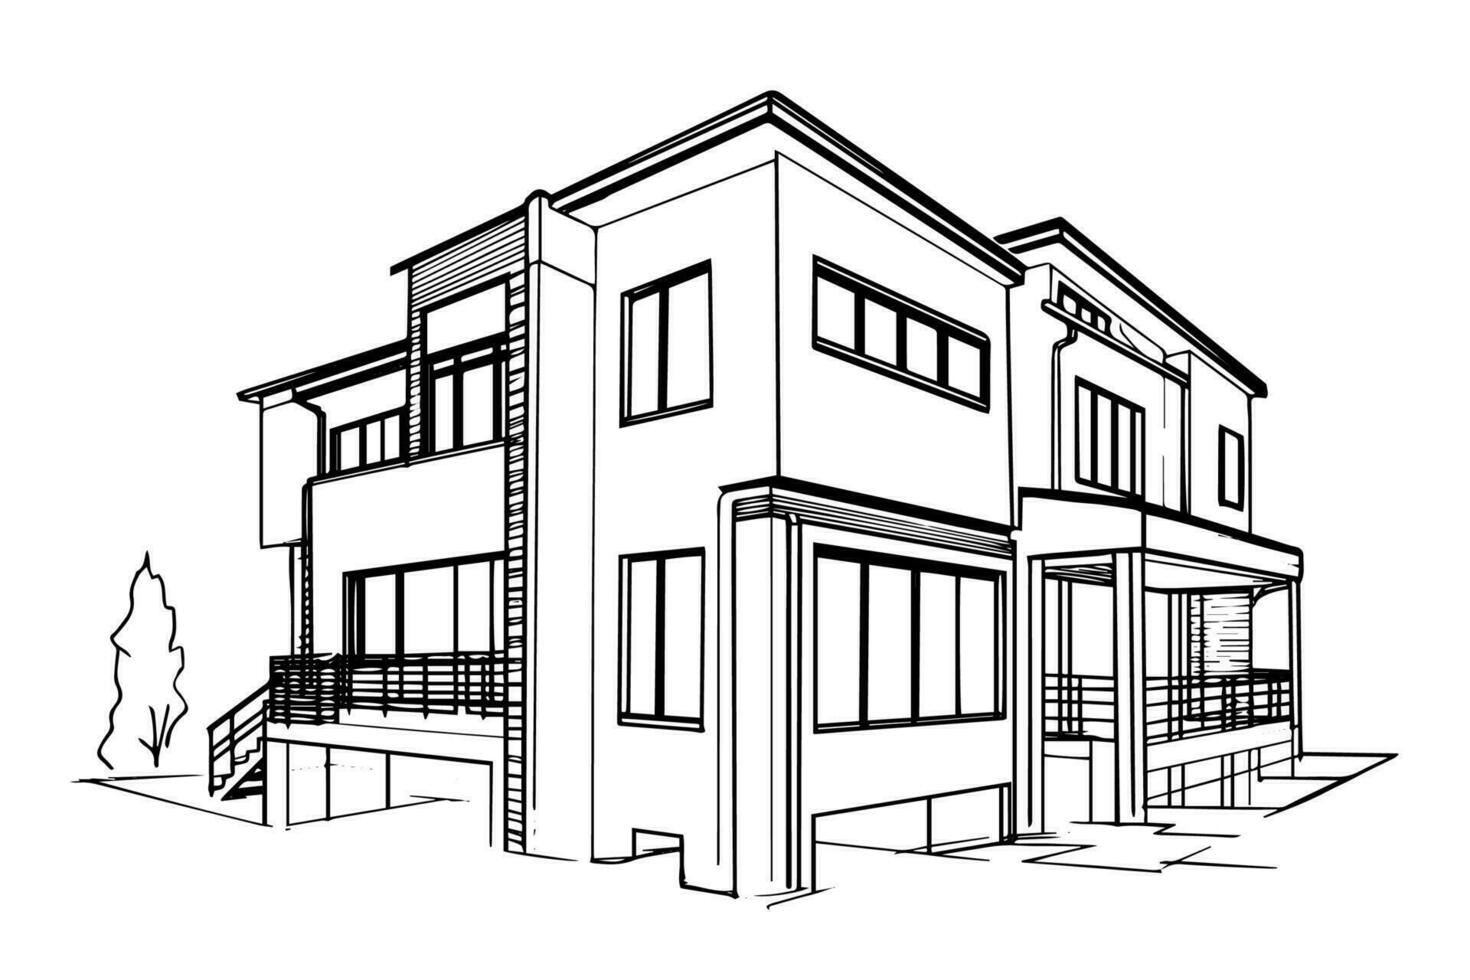 vektor svart och vit bläck skiss av modern hus. gravyr stil illustration.